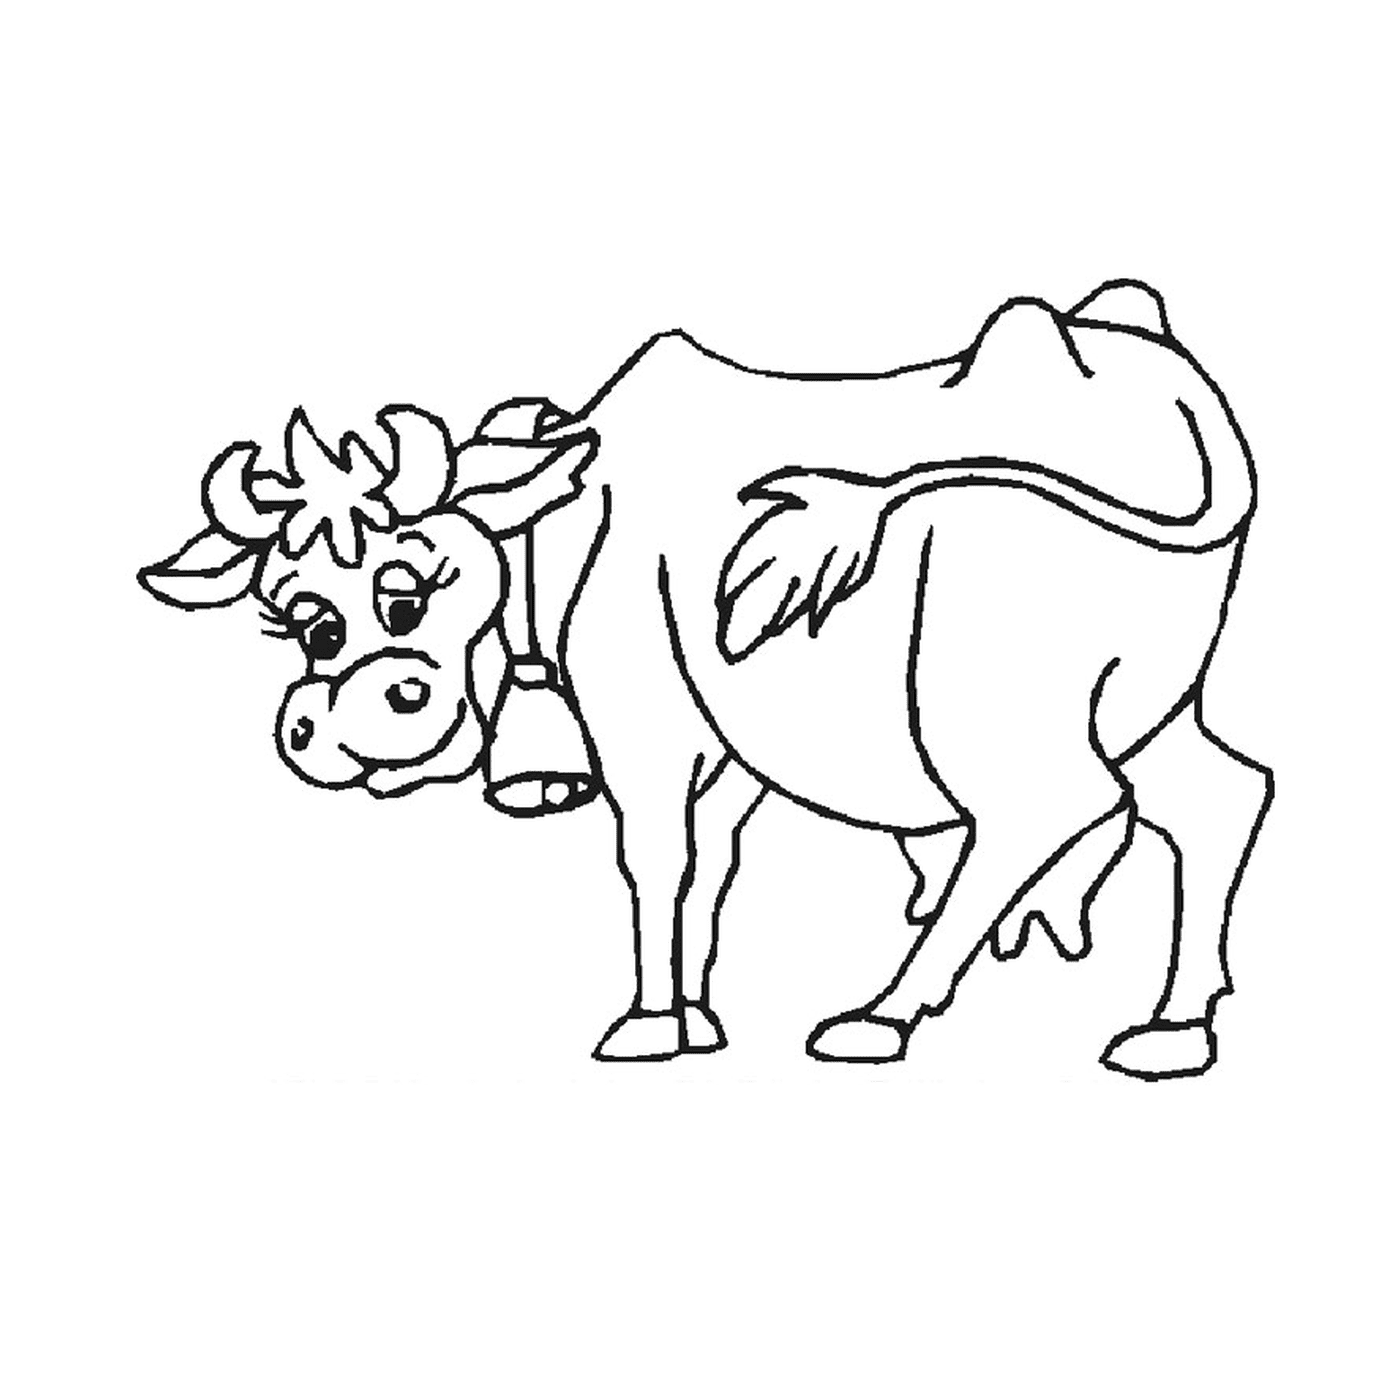  Eine Kuh steht auf 